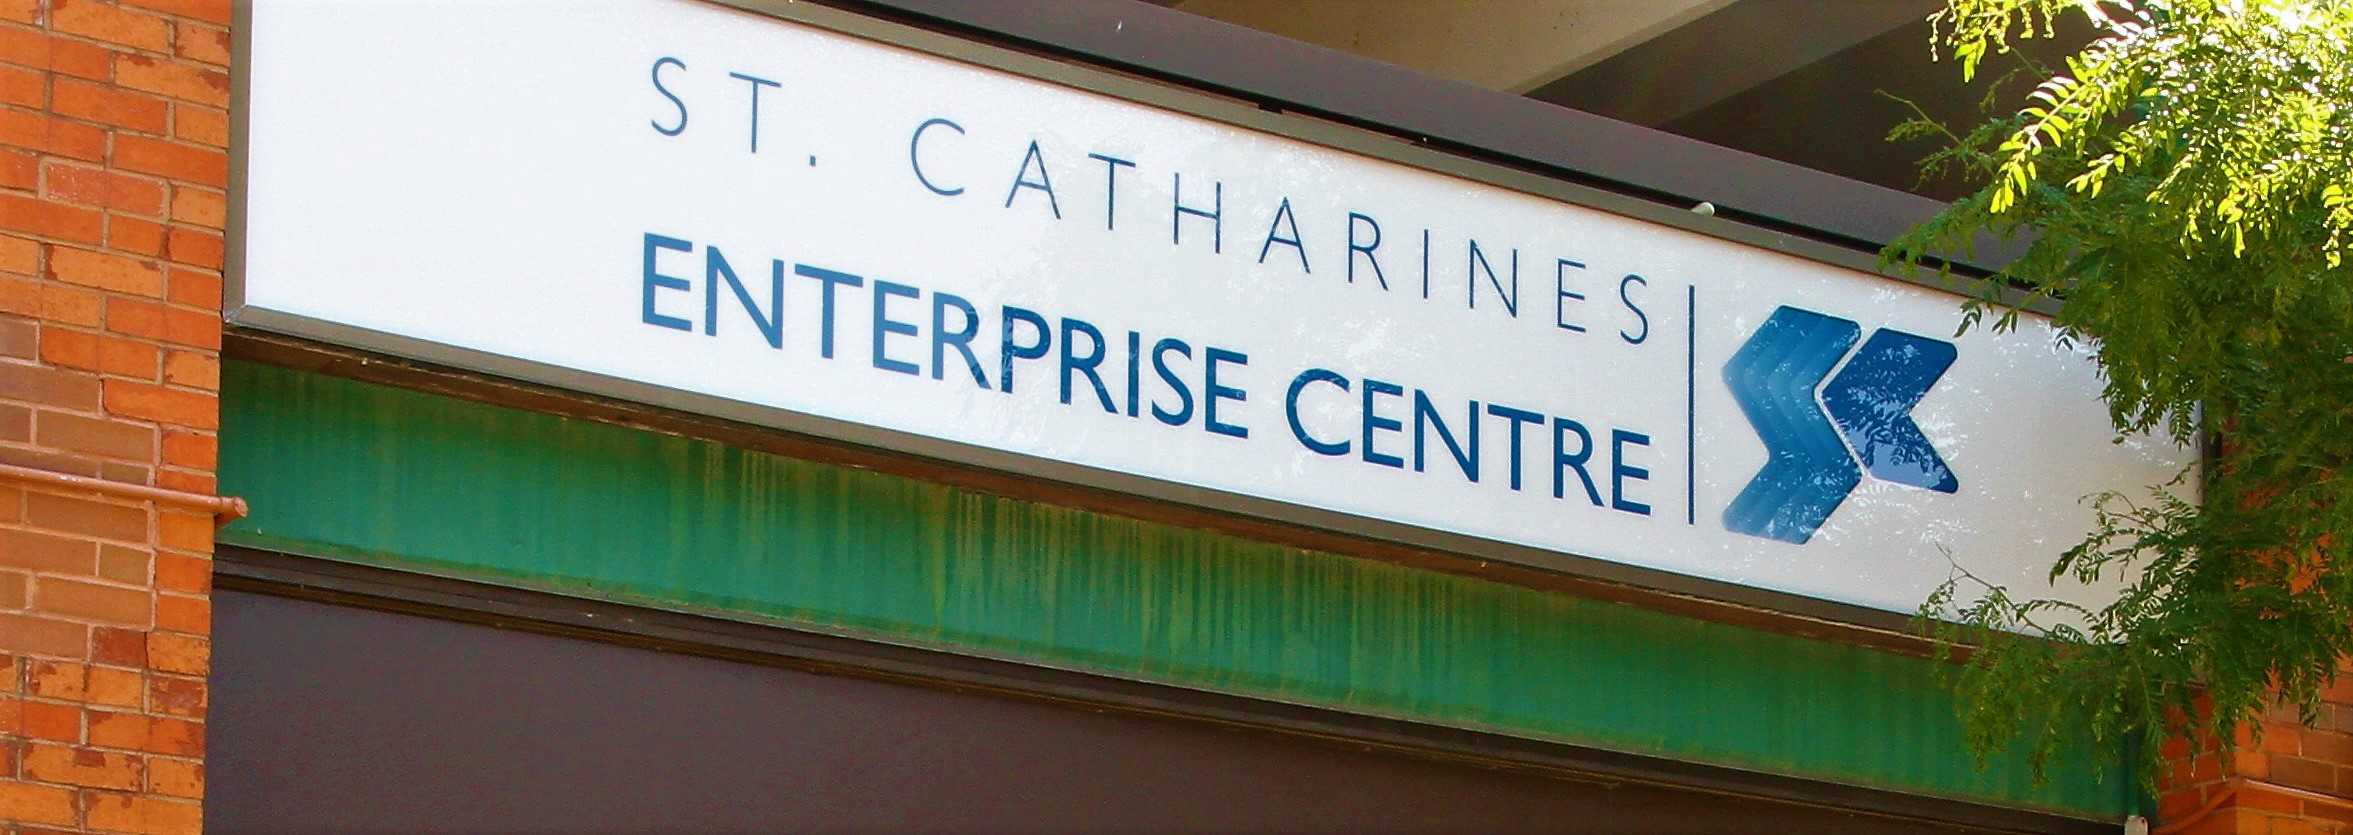 enterprise-centre-02-img6241-original